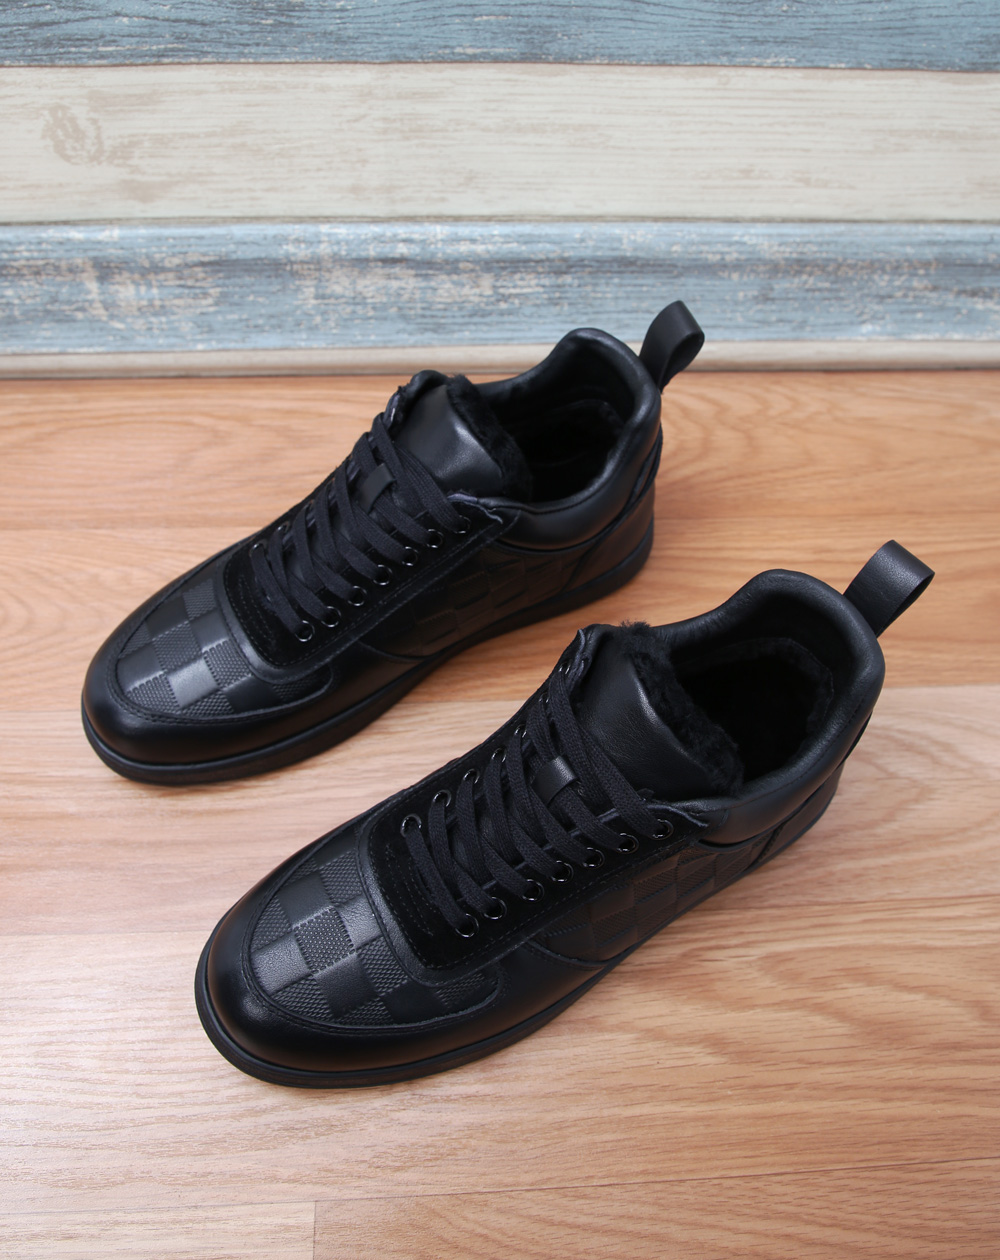 人気商品ルイヴィトンの靴偽物 ブラック 買い得 潮流n品_1